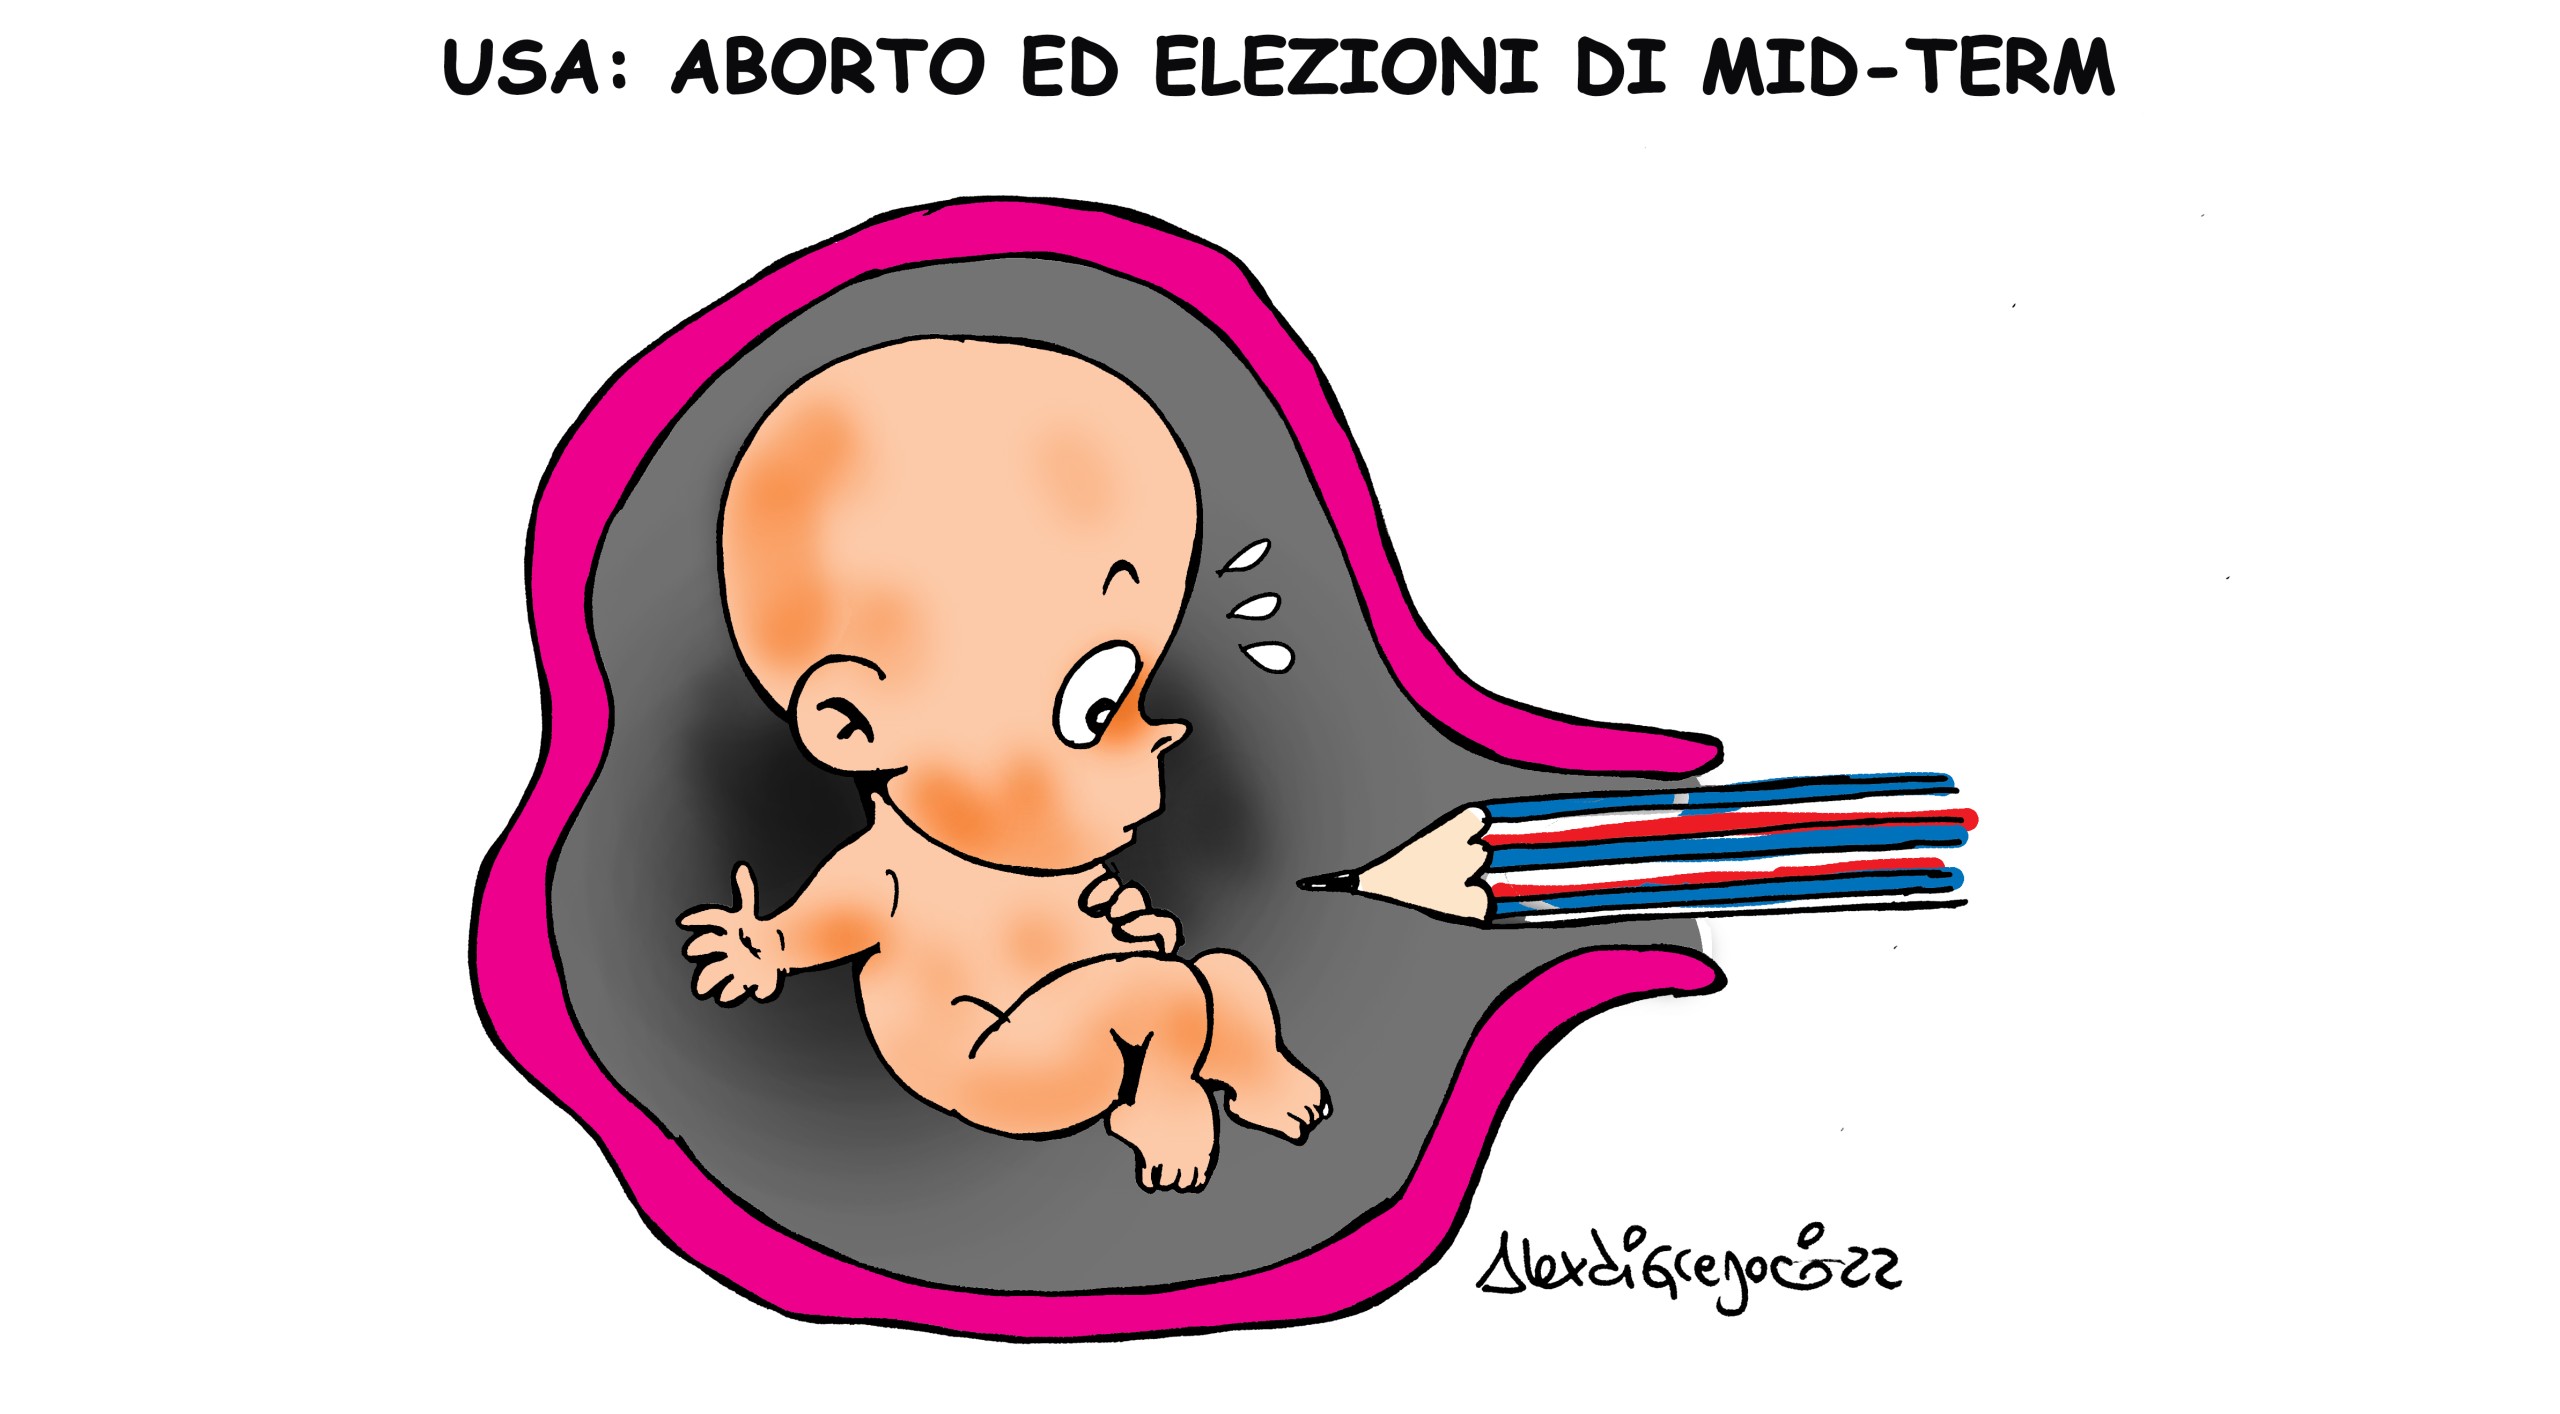 LA VIGNETTA di Alex Di Gregorio: “Aborto ed elezioni mid-term in USA”